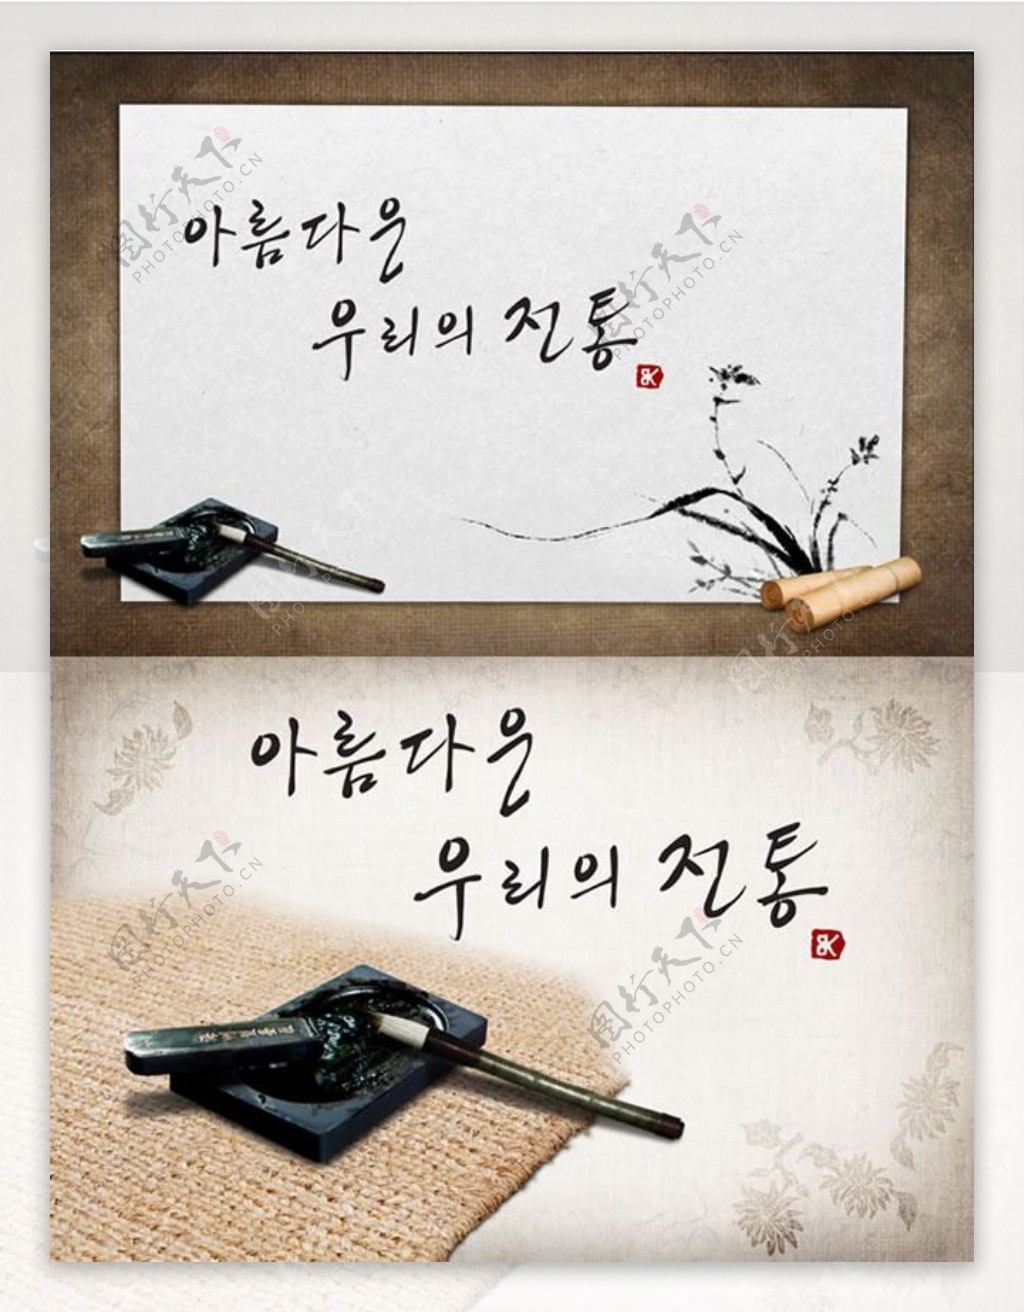 笔墨纸砚韩国传统文化psd素材